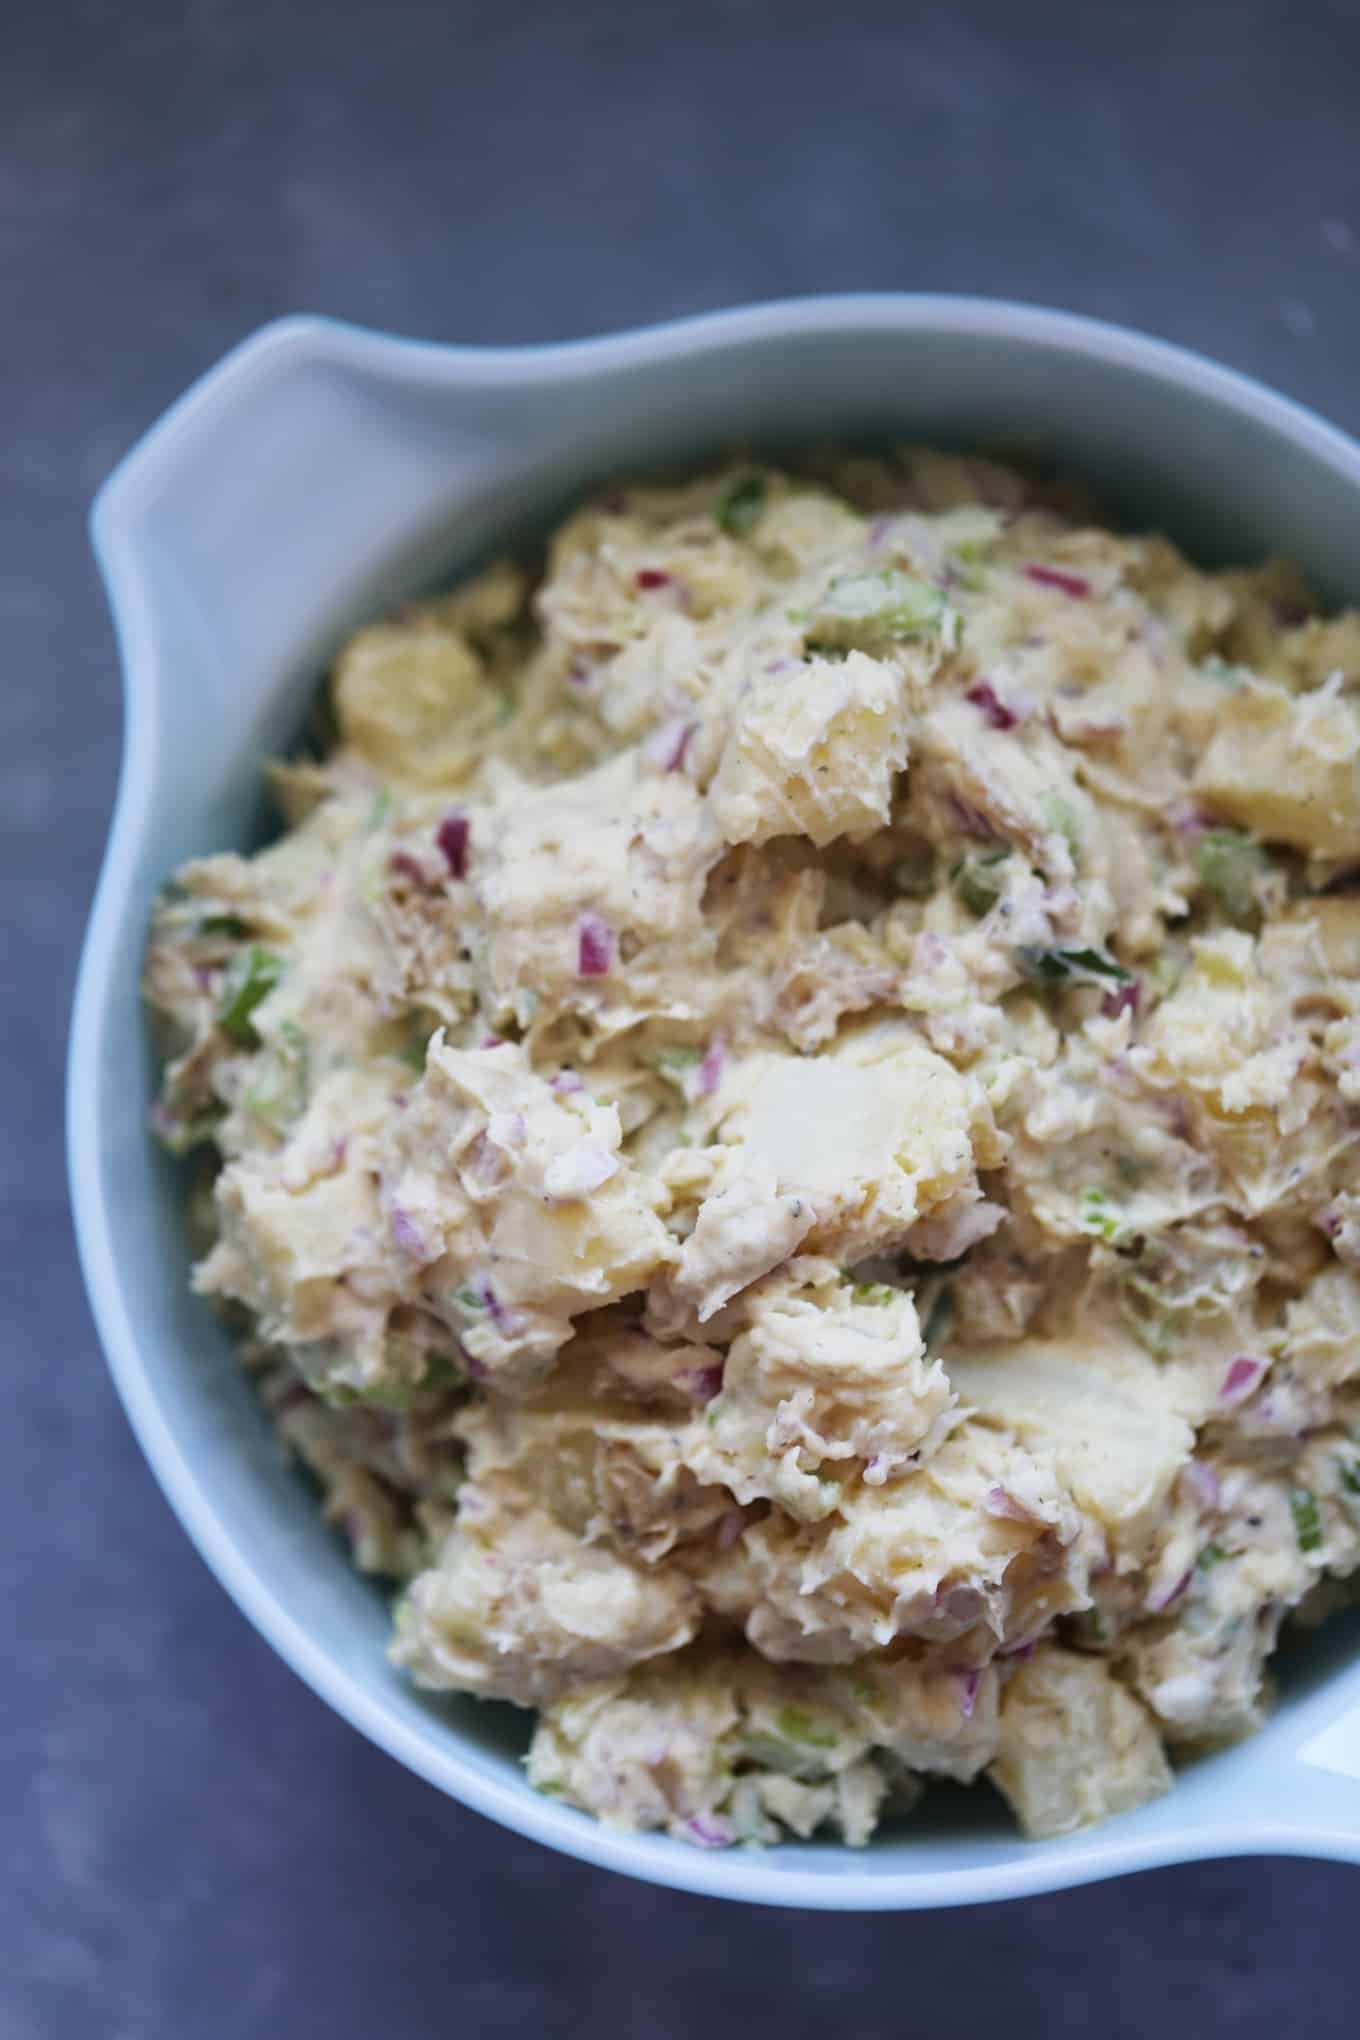 A bowl of vegan potato salad